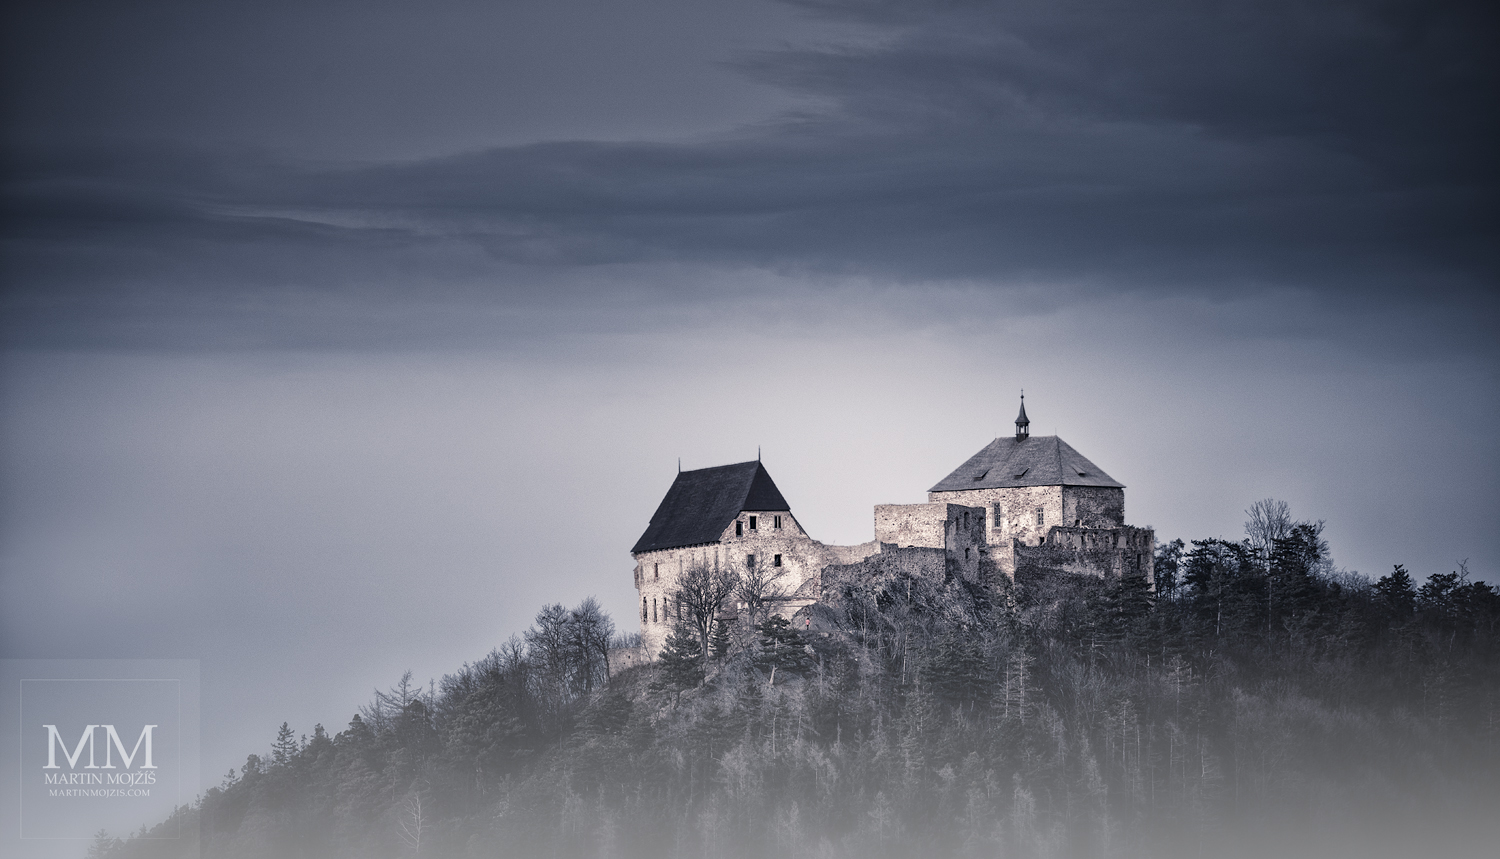 Velkoformátová umělecká fotografie hradu na vrcholu hory.